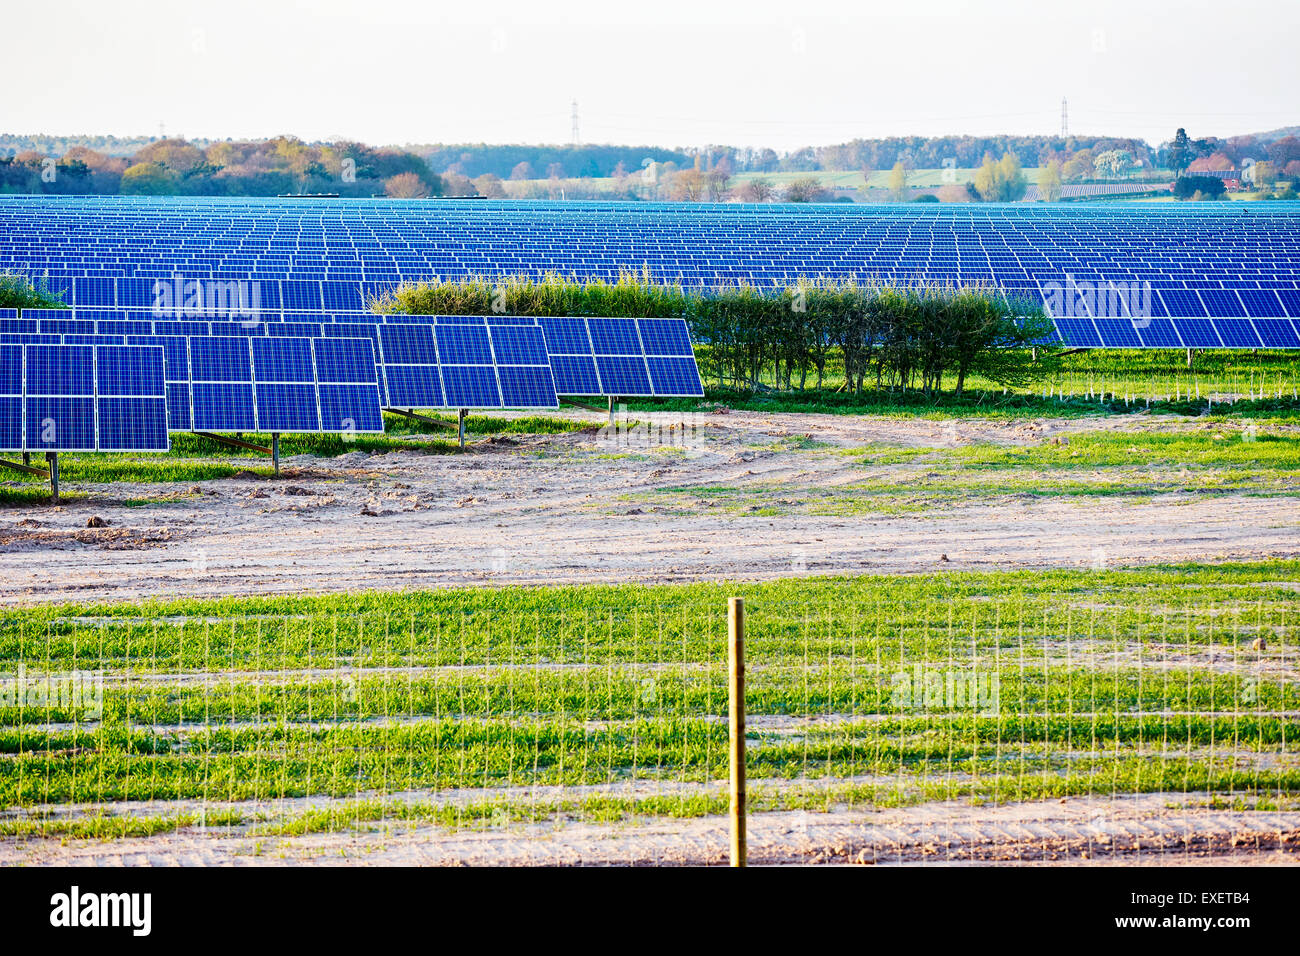 Vue d'une usine de production d'électricité solaire dans un fileld en Angleterre Banque D'Images